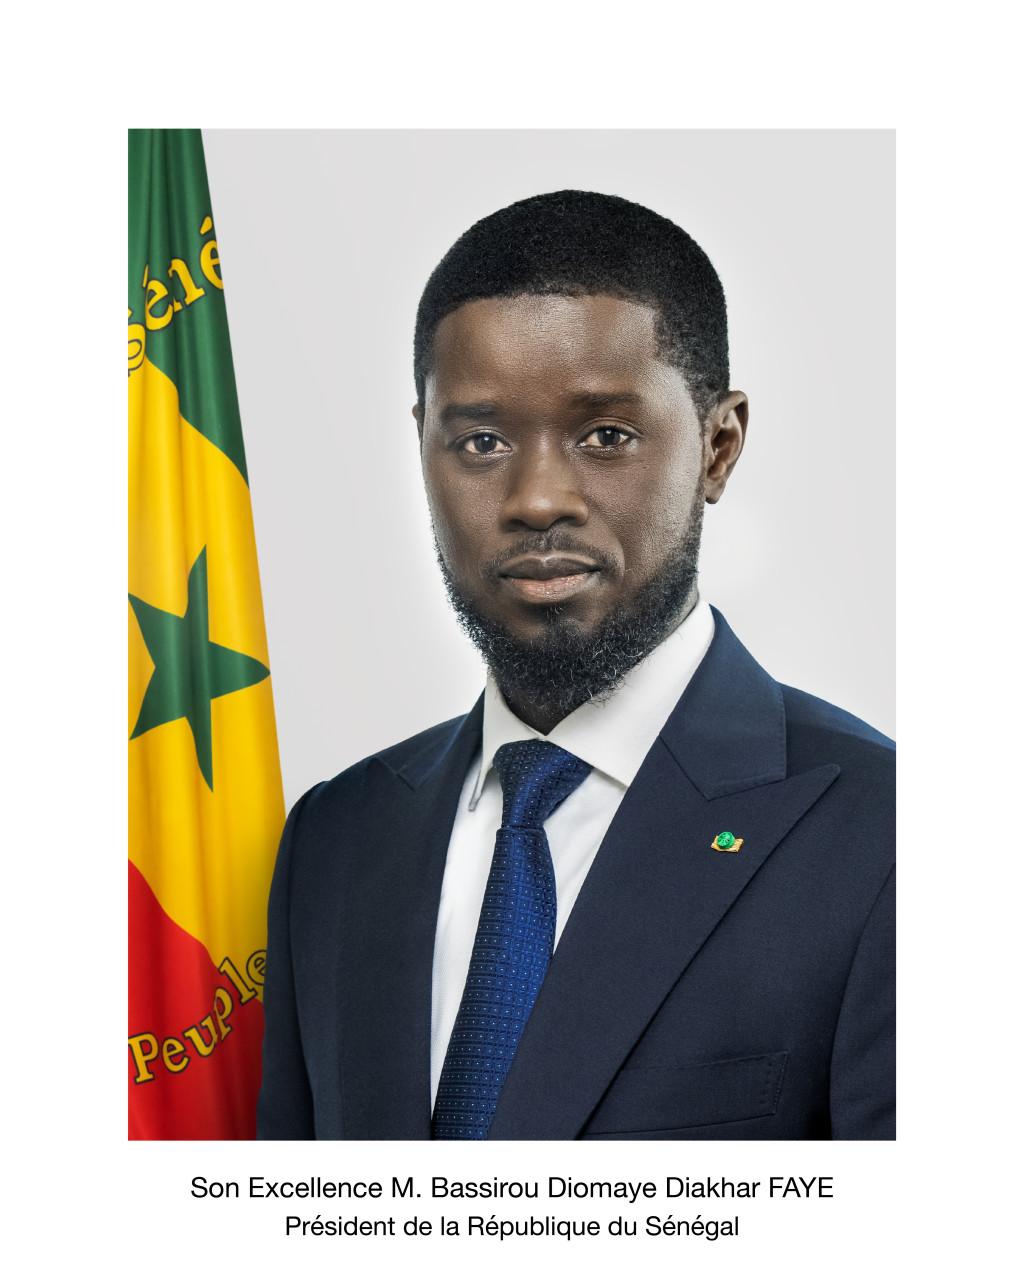 La République du Sénégal